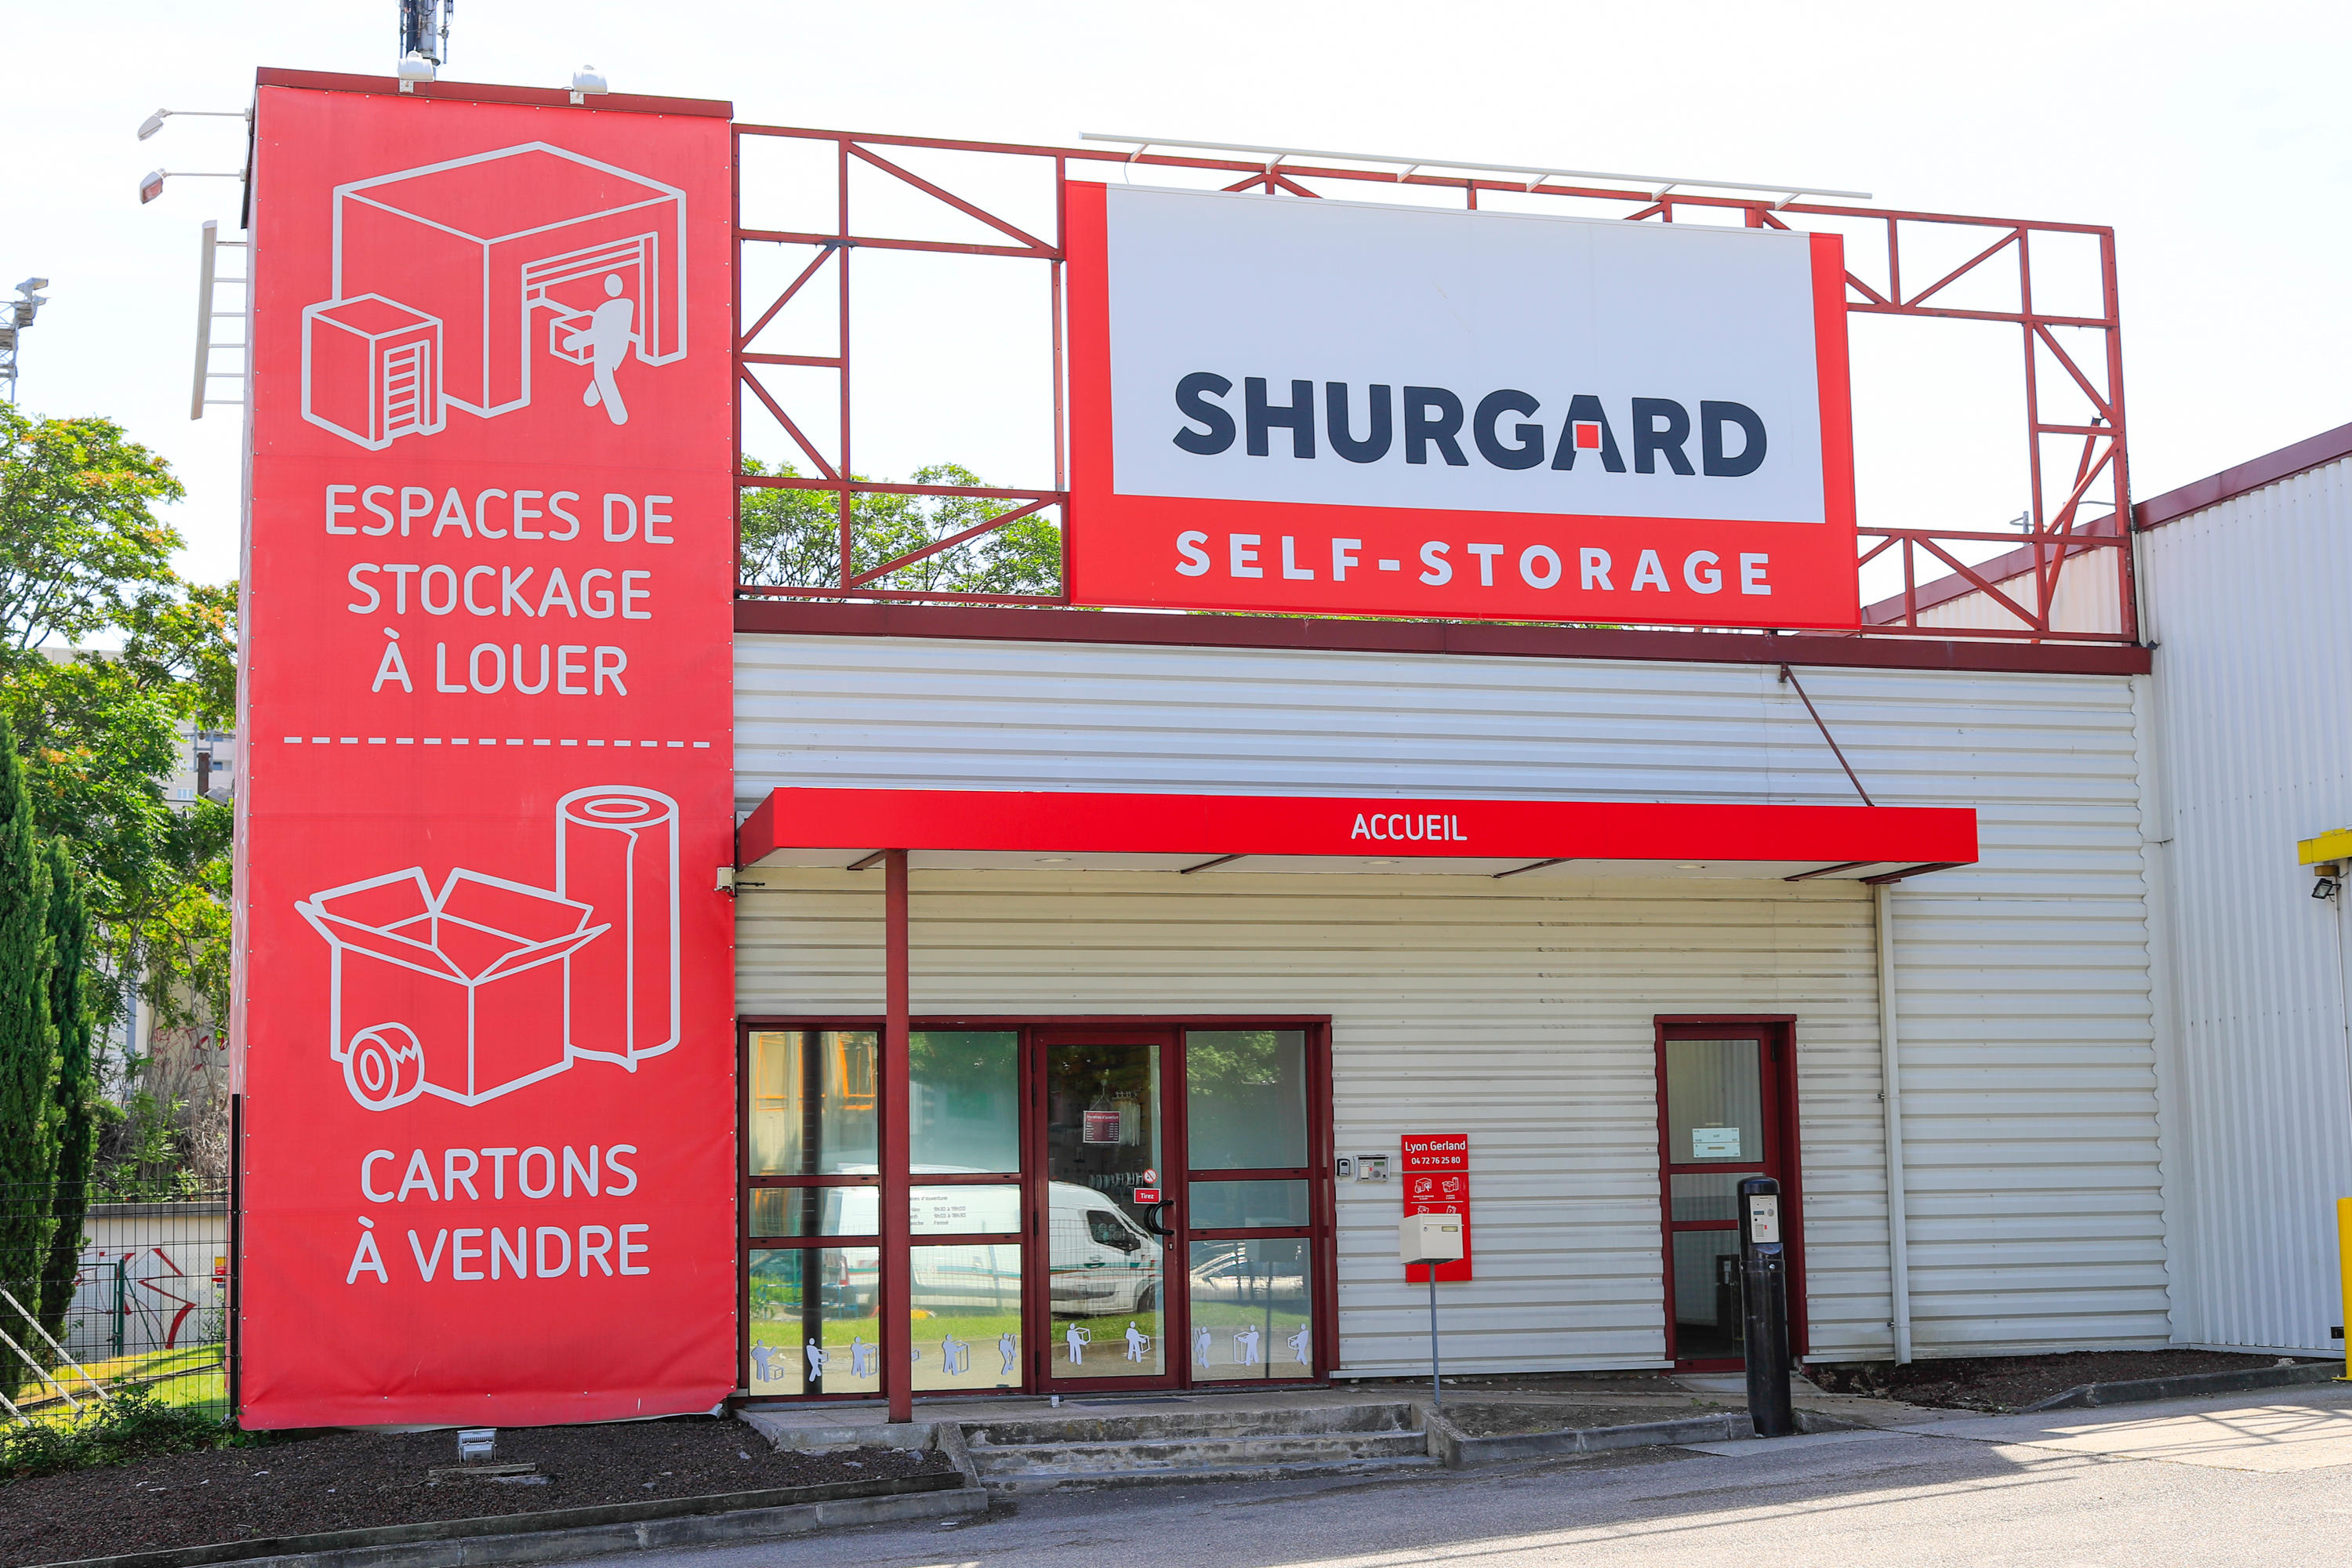 Shurgard Self Storage Lyon Gerland